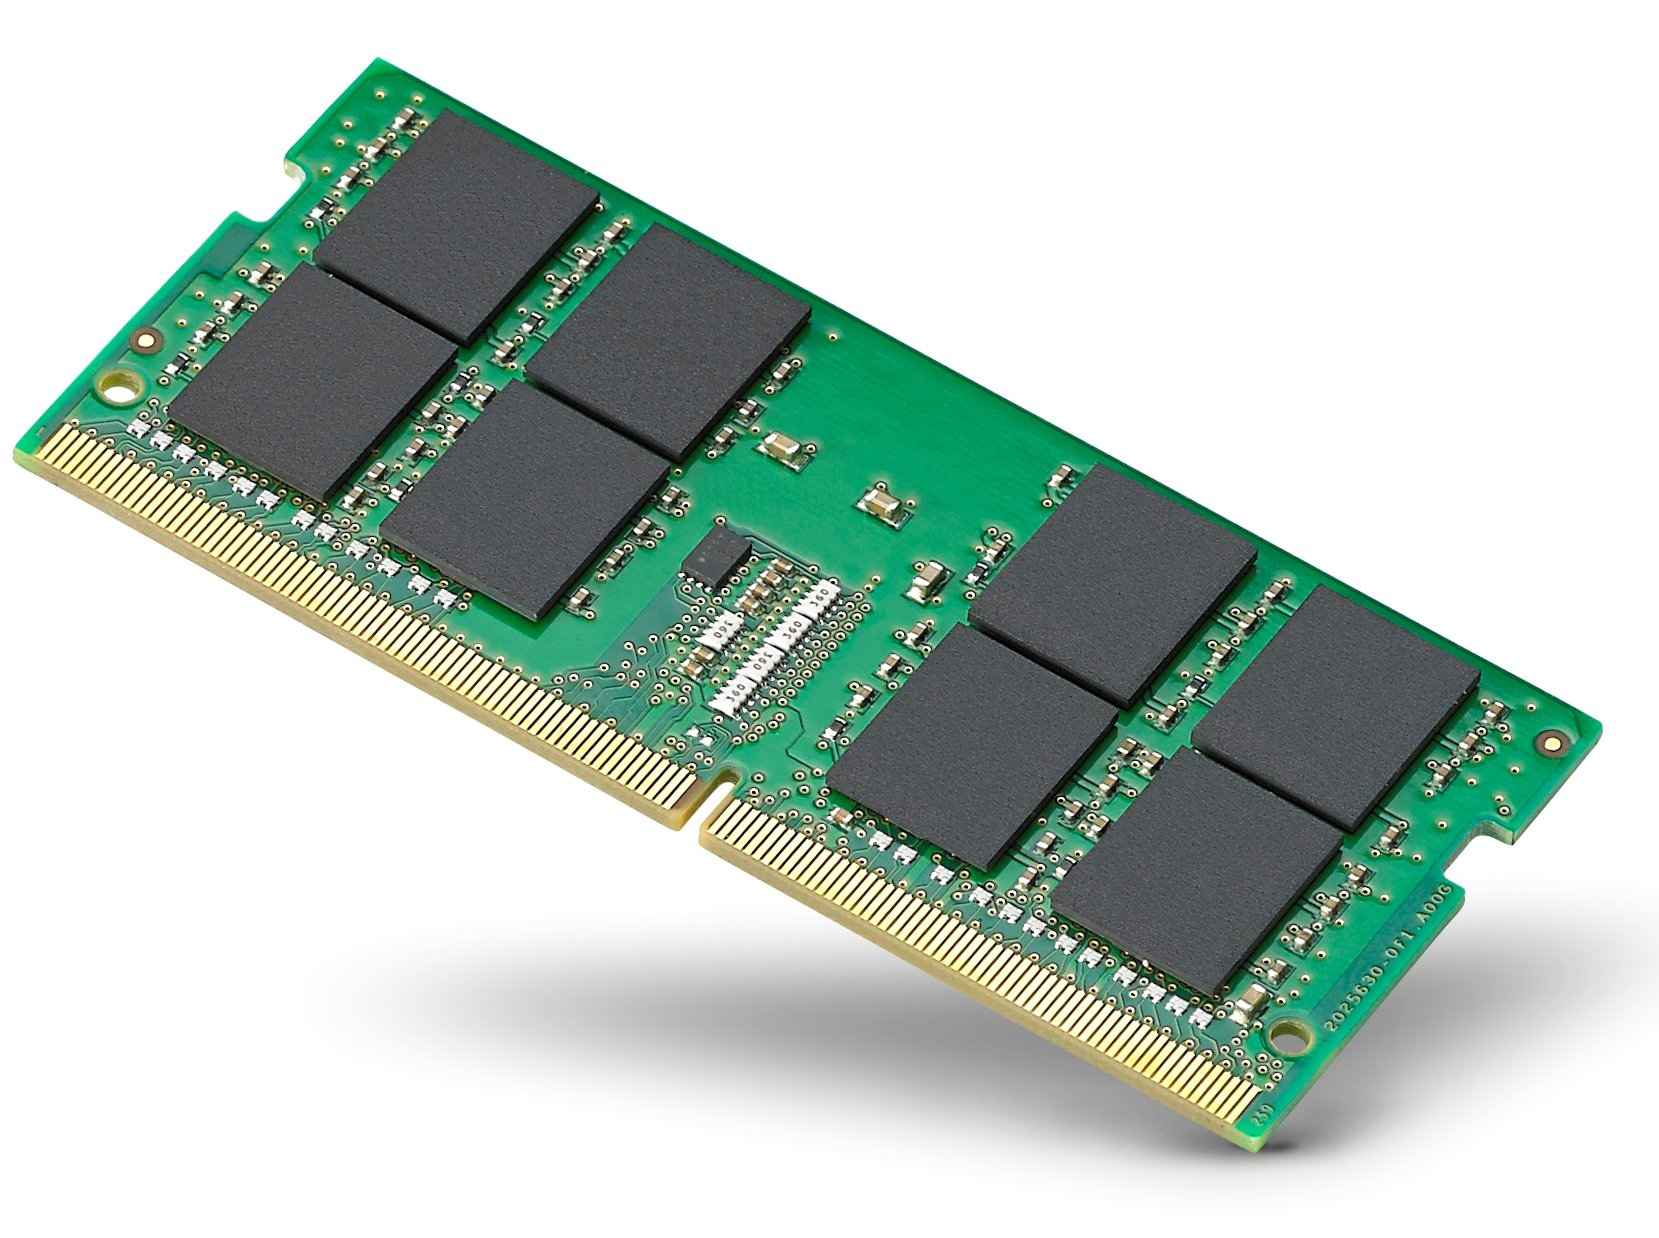 Mémoire RAM Nuimpact 64 Go (2 x 32 Go) DDR4 SODIMM 2666 Mhz PC4-21300 -  Mémoire RAM - Nuimpact